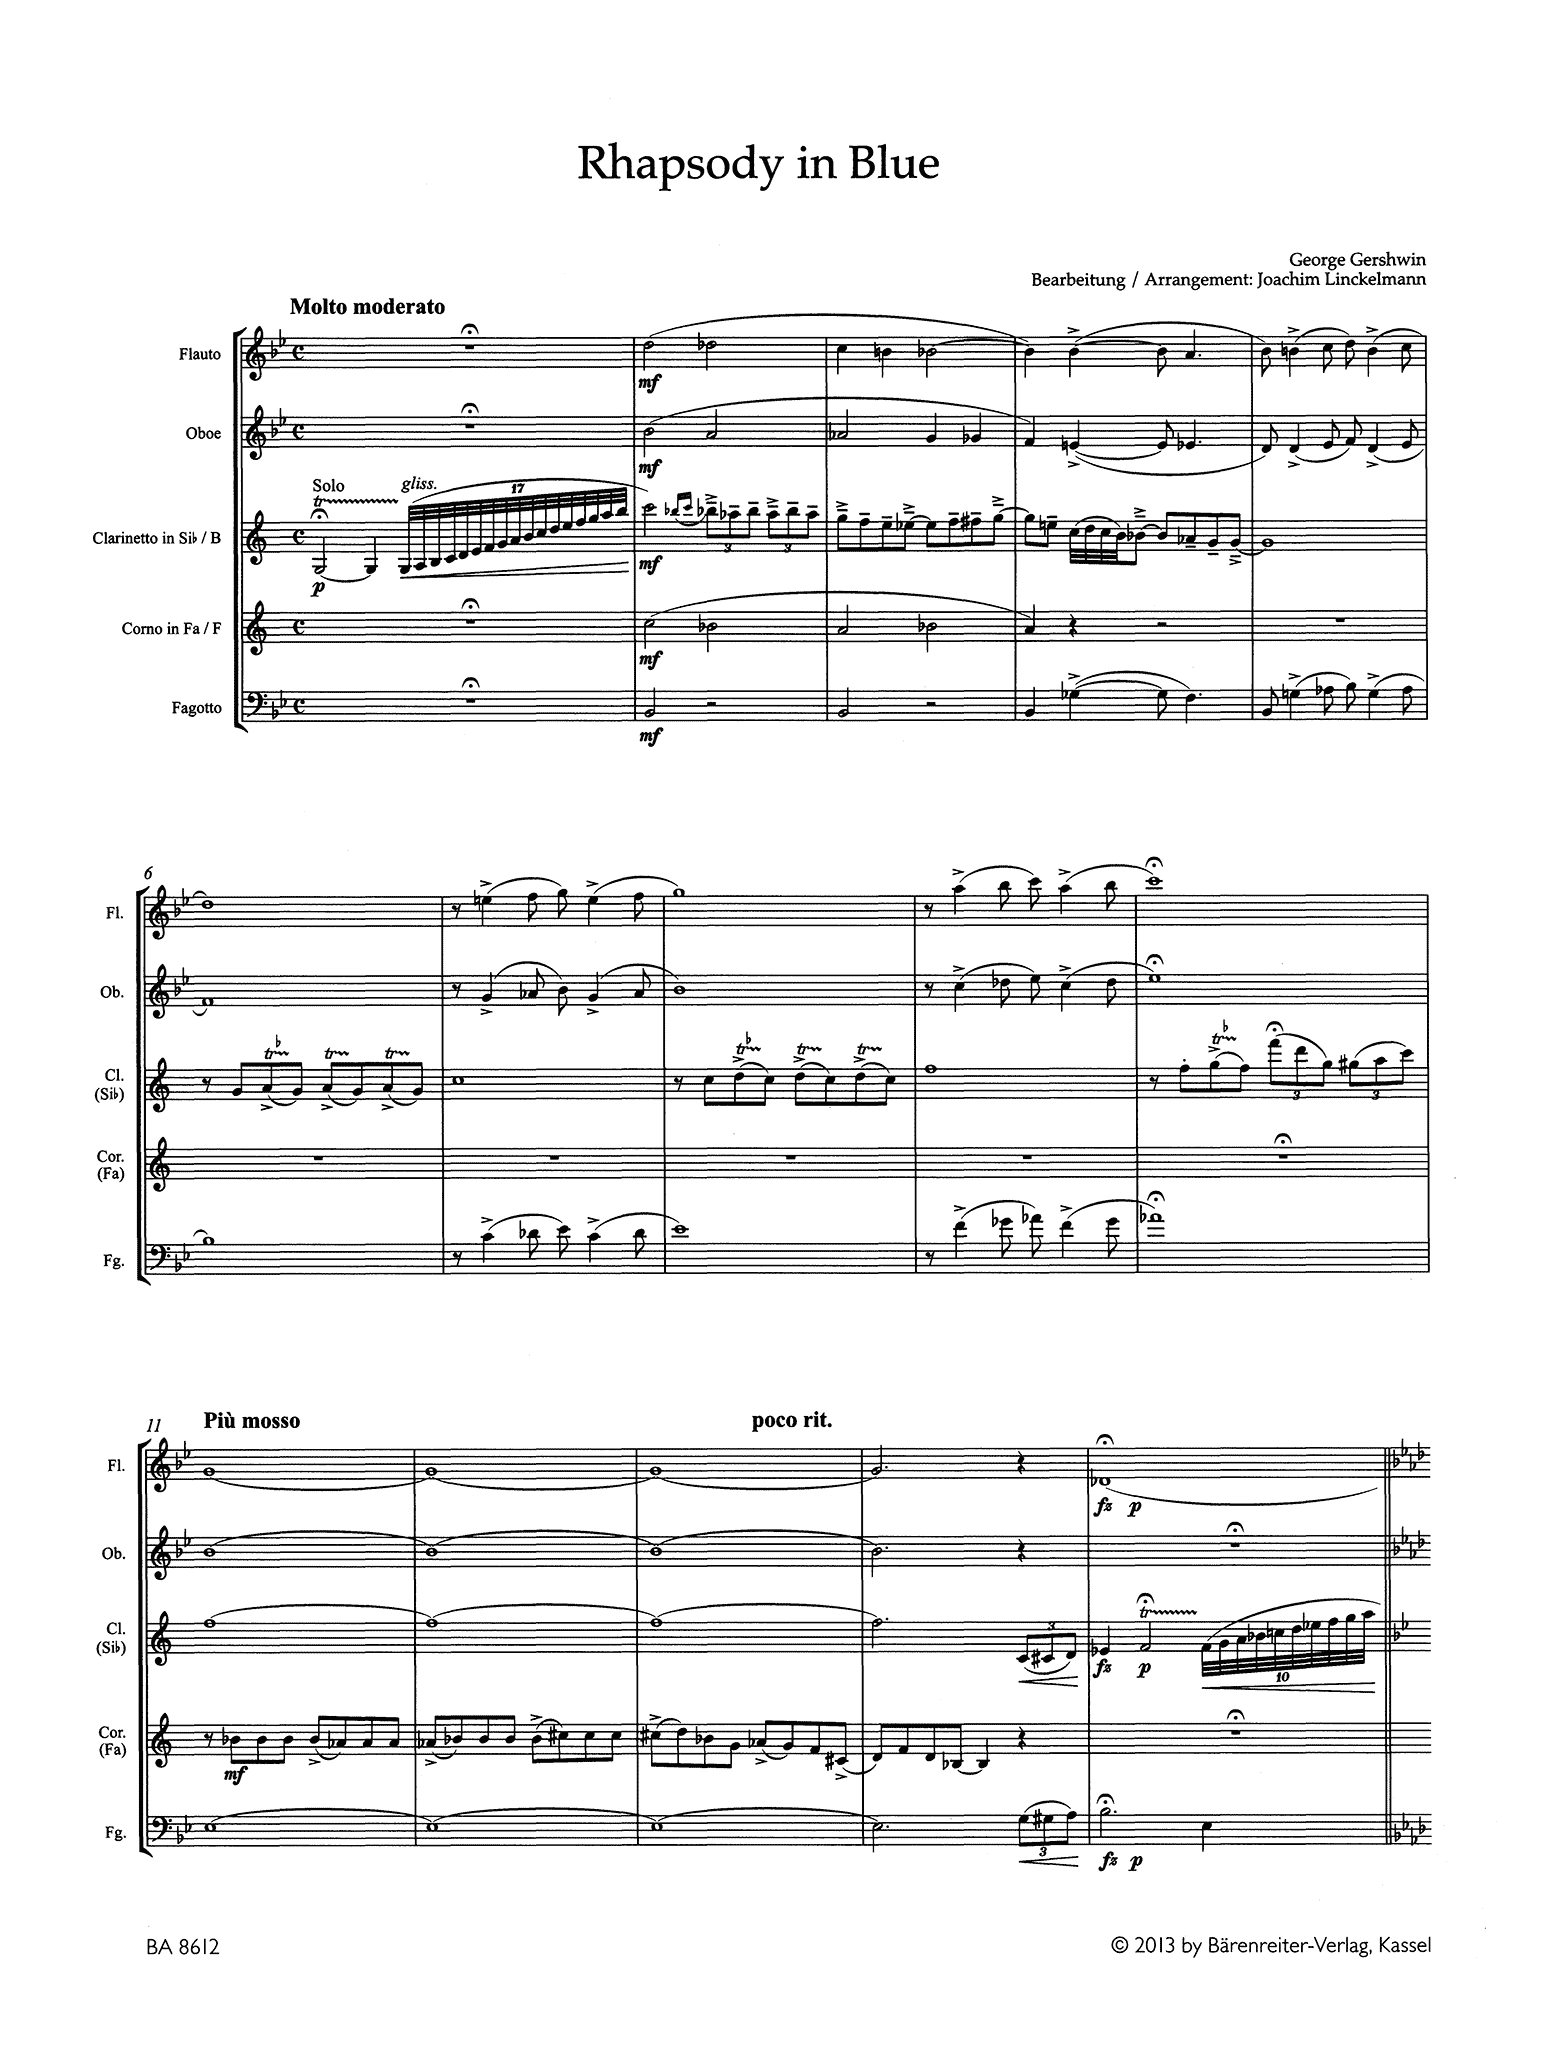 Gershwin Rhapsody in Blue woodwind quintet arrangement score